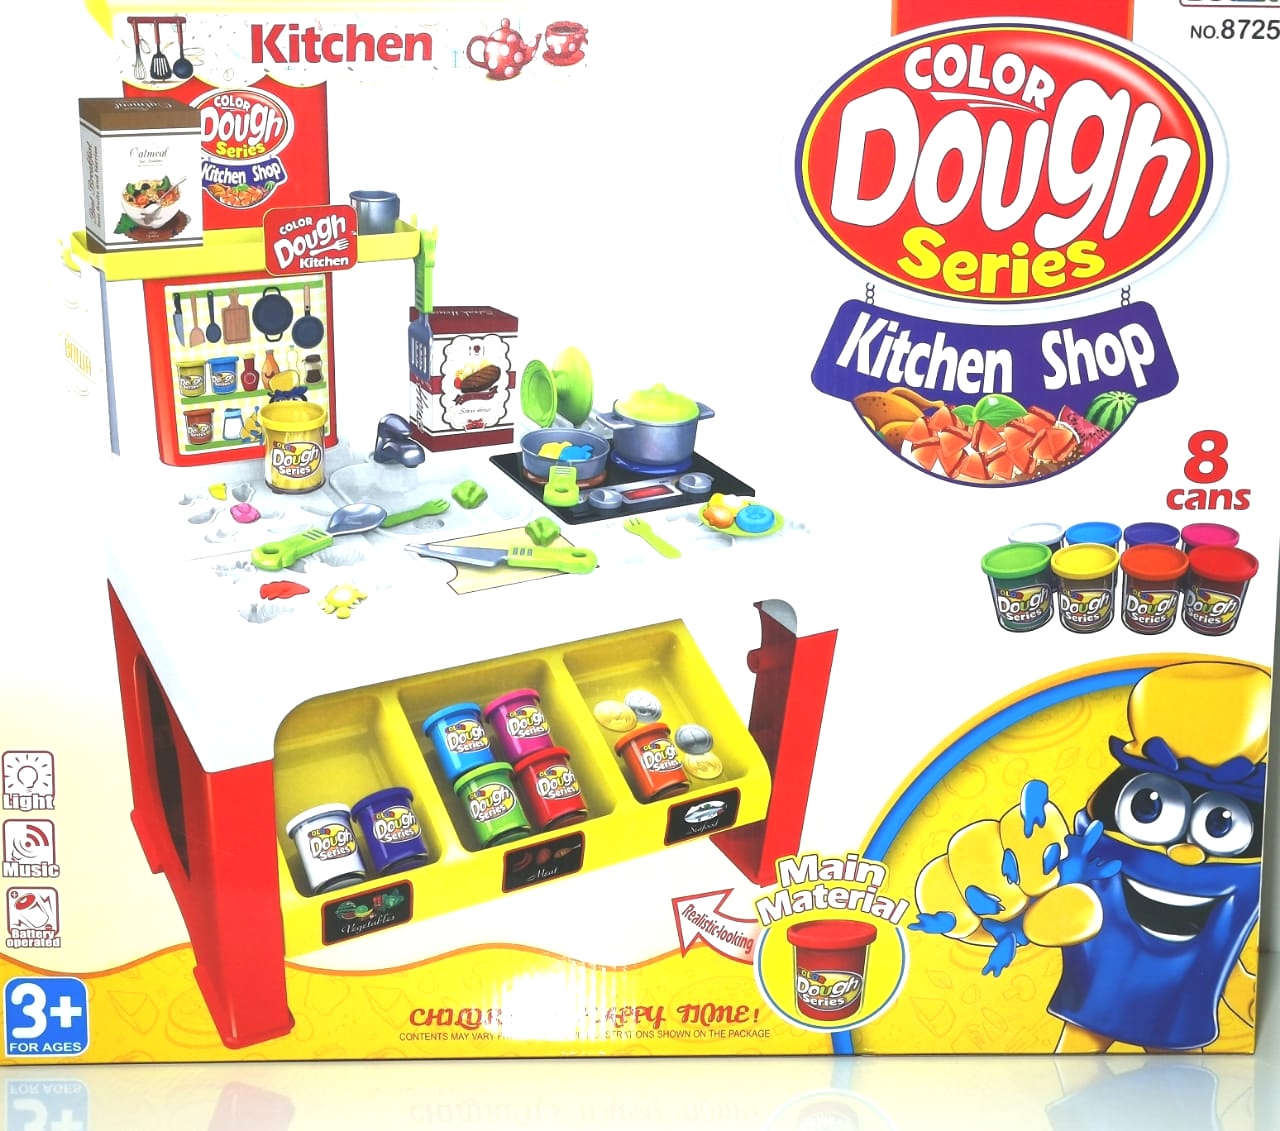 color dough series kitchen shop